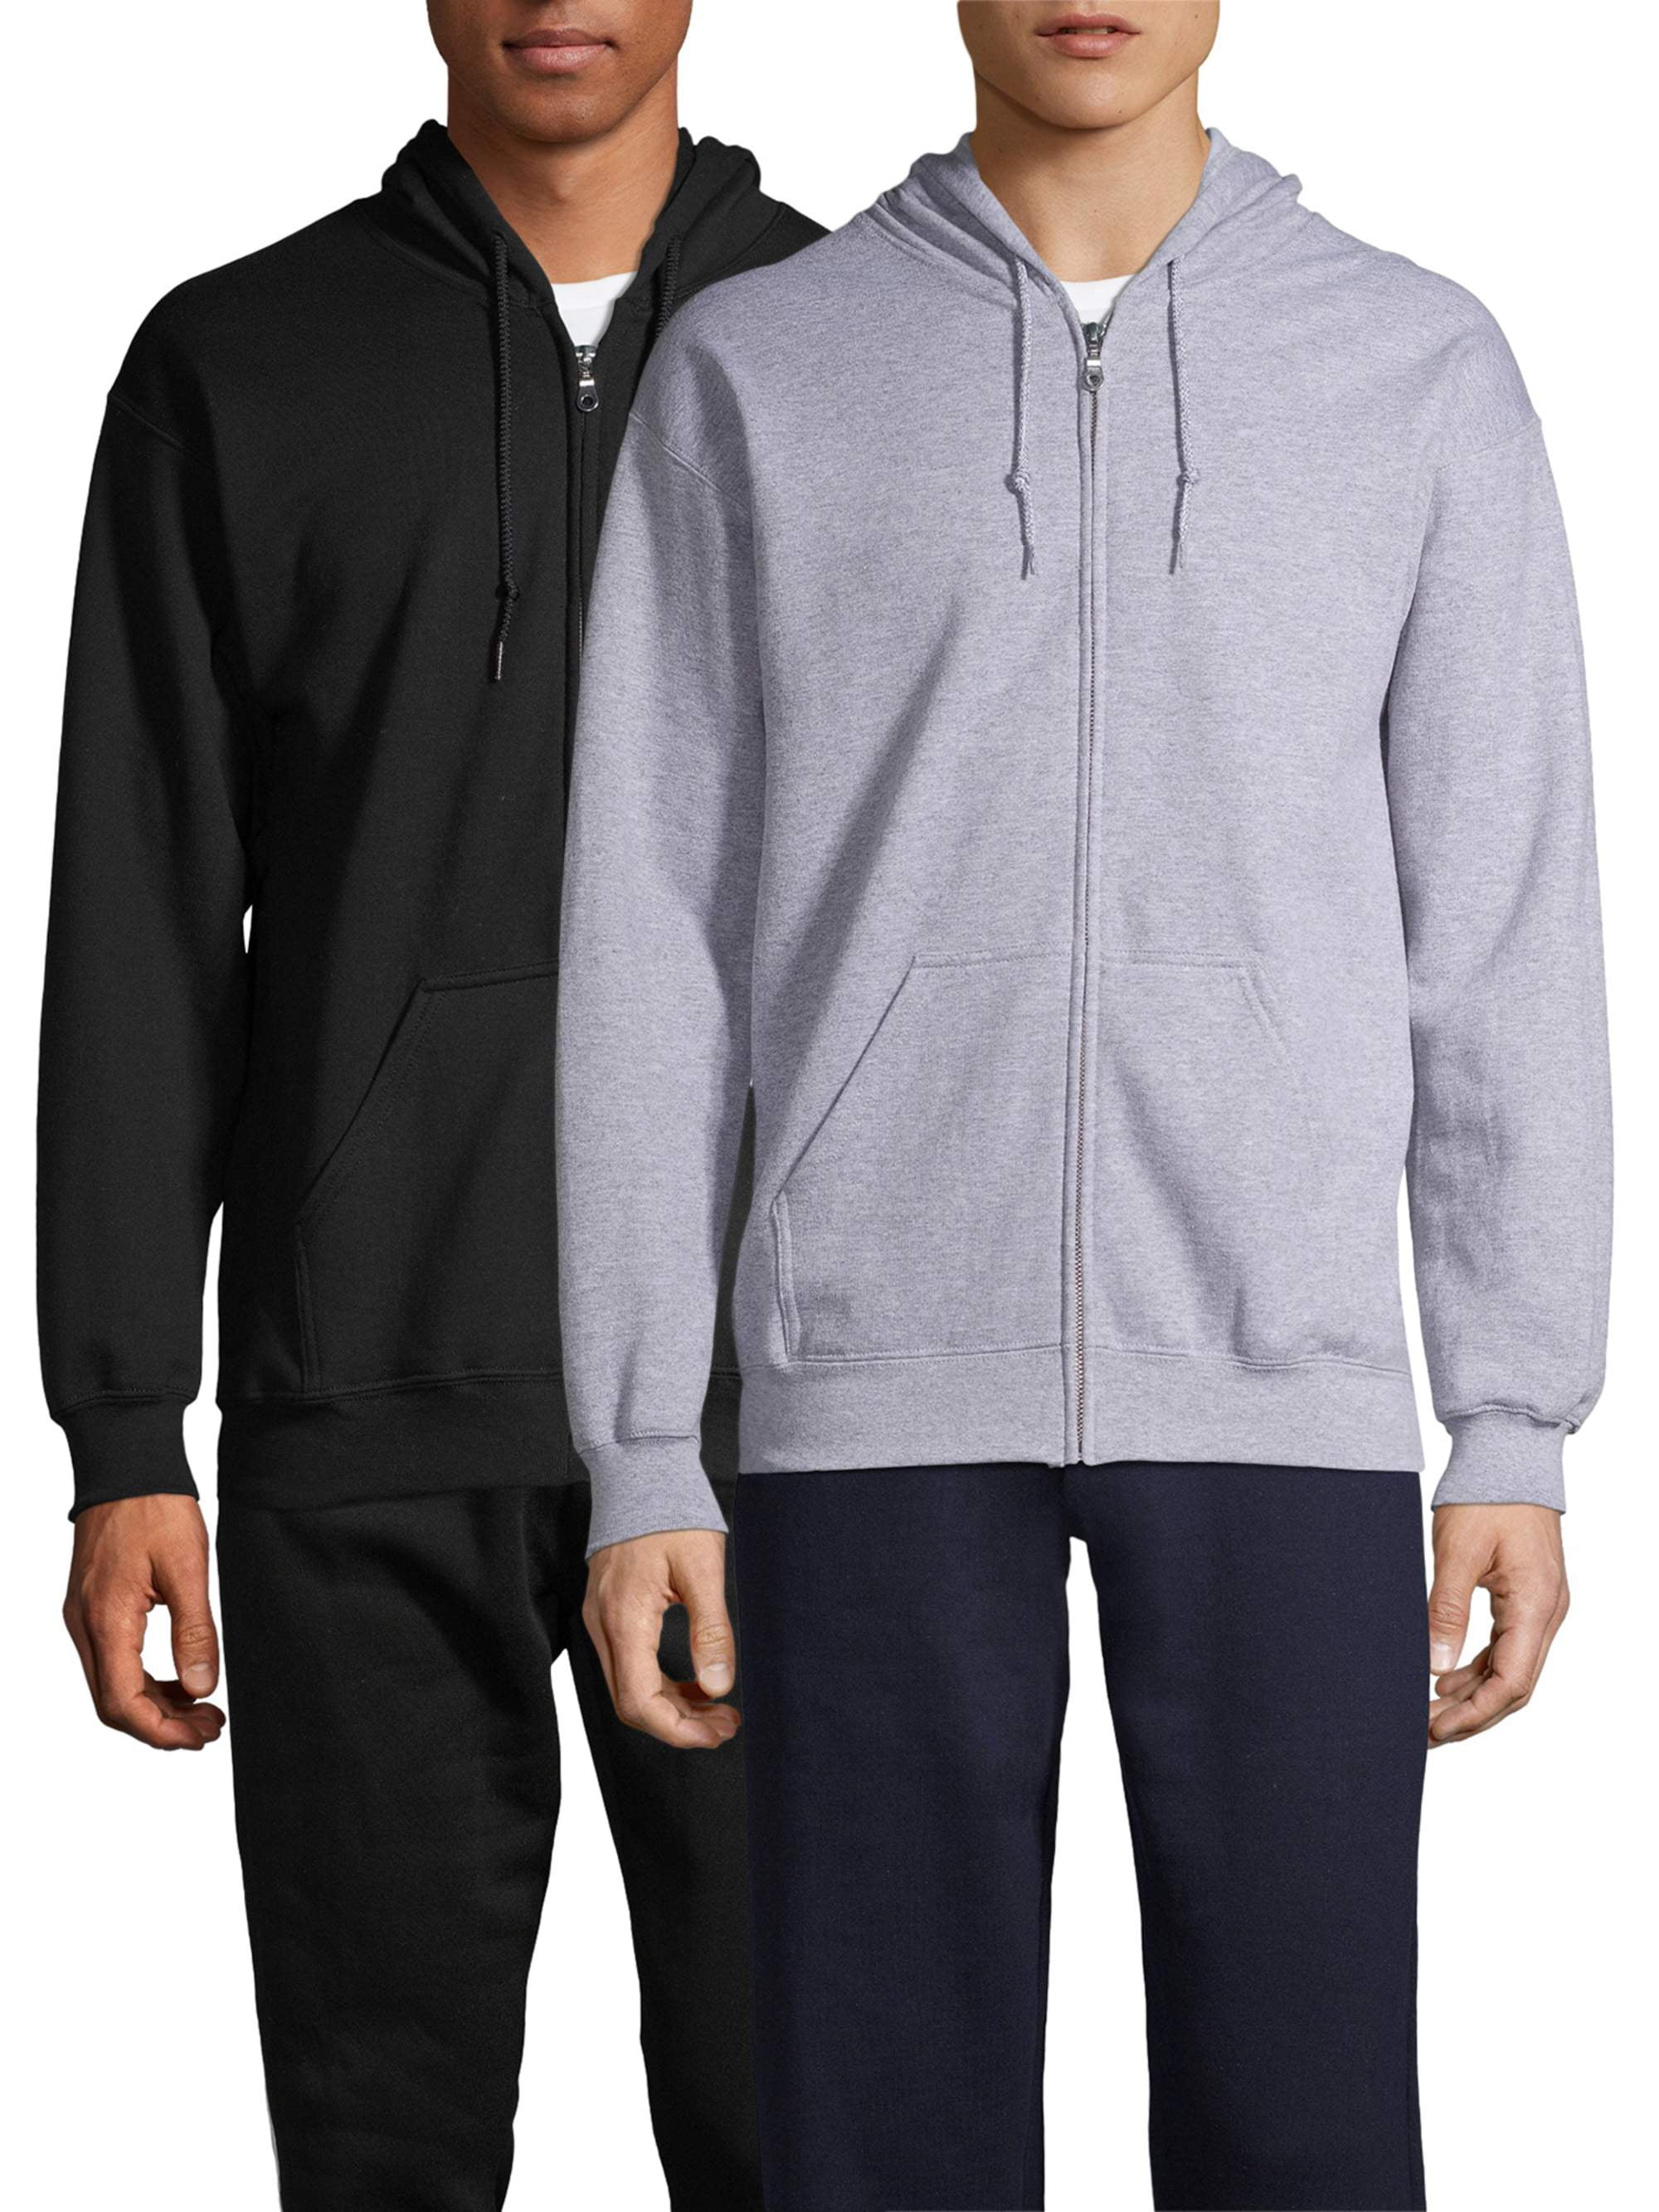 Gildan Mens Fleece Zip Hooded Sweatshirt 